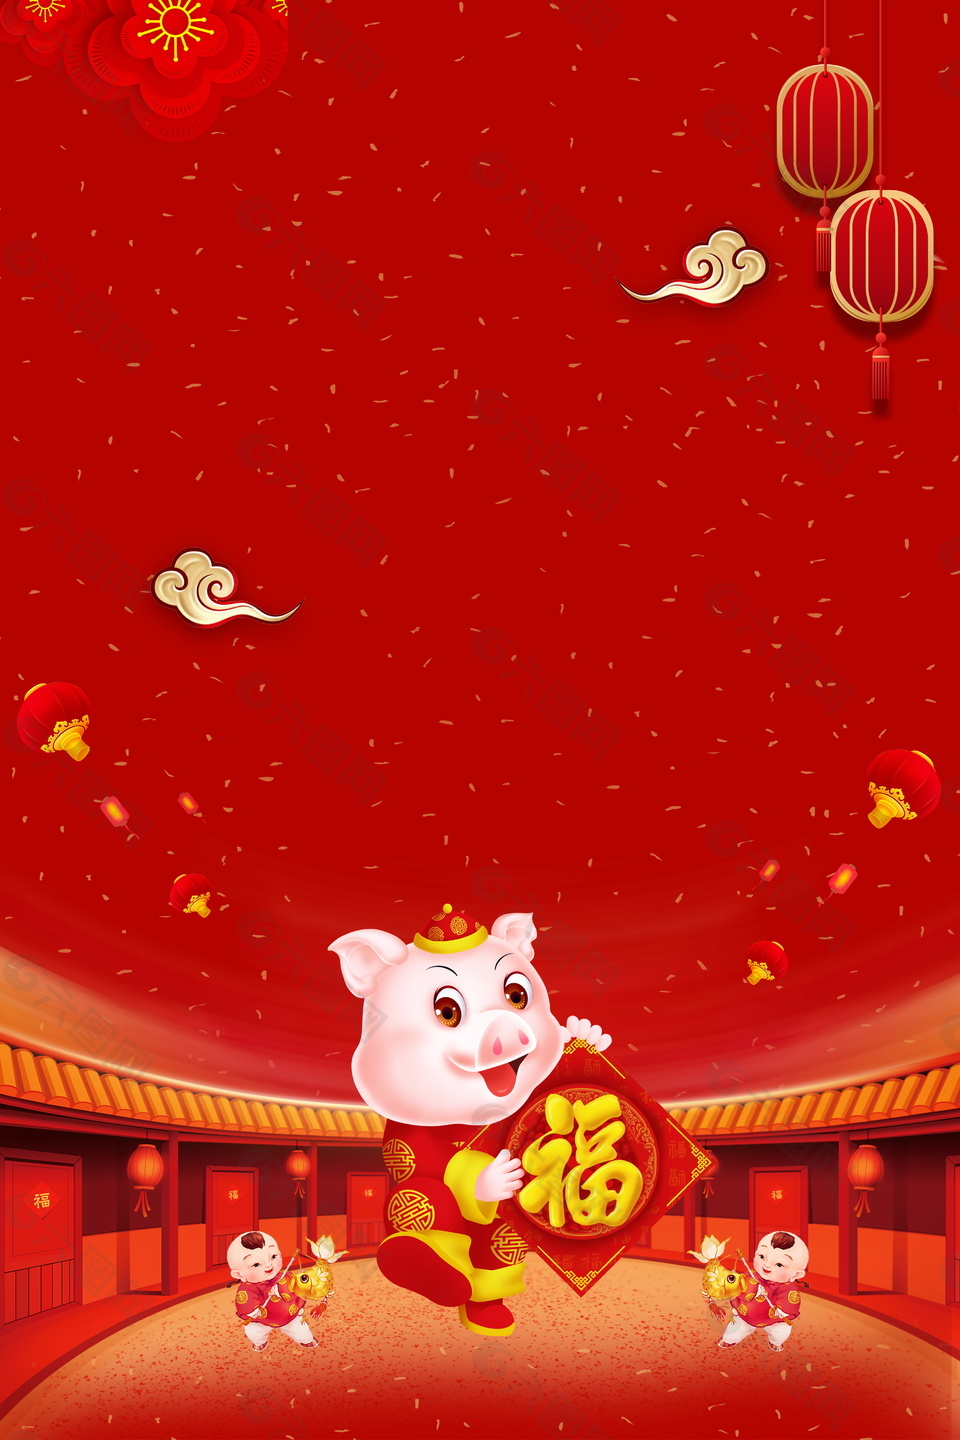 金猪贺岁2019猪年春节海报背景设计